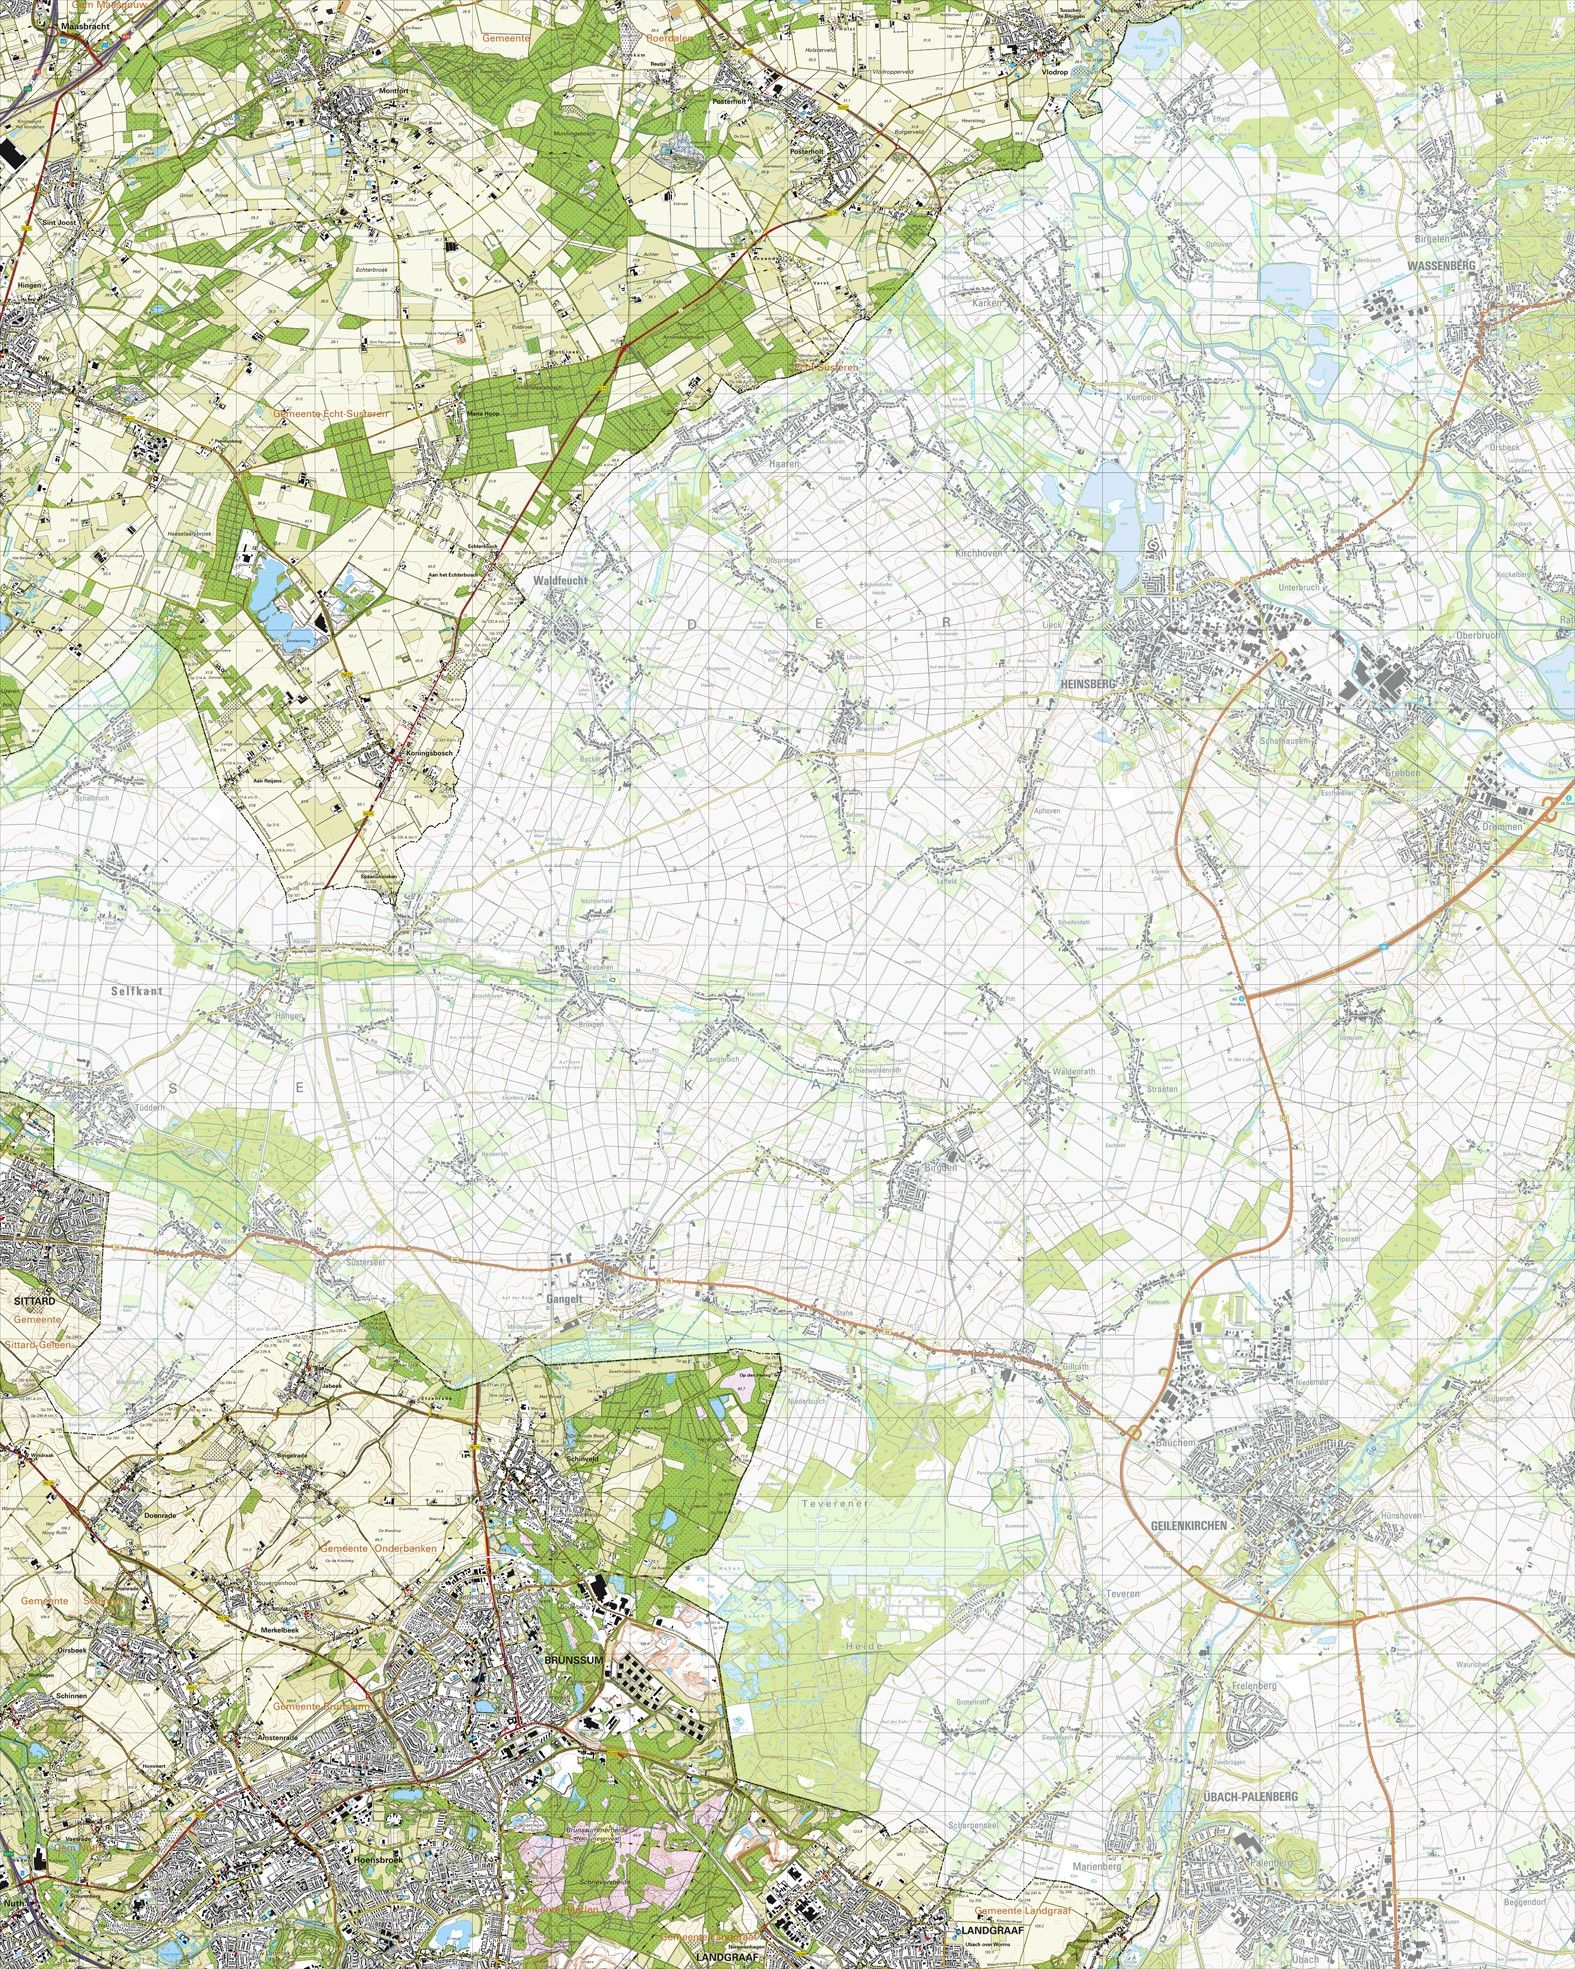 Topografische kaart schaal 1:25.000 (Montfort, Posterholt, Koningsbosch, Brunssum, Hoensbroek)